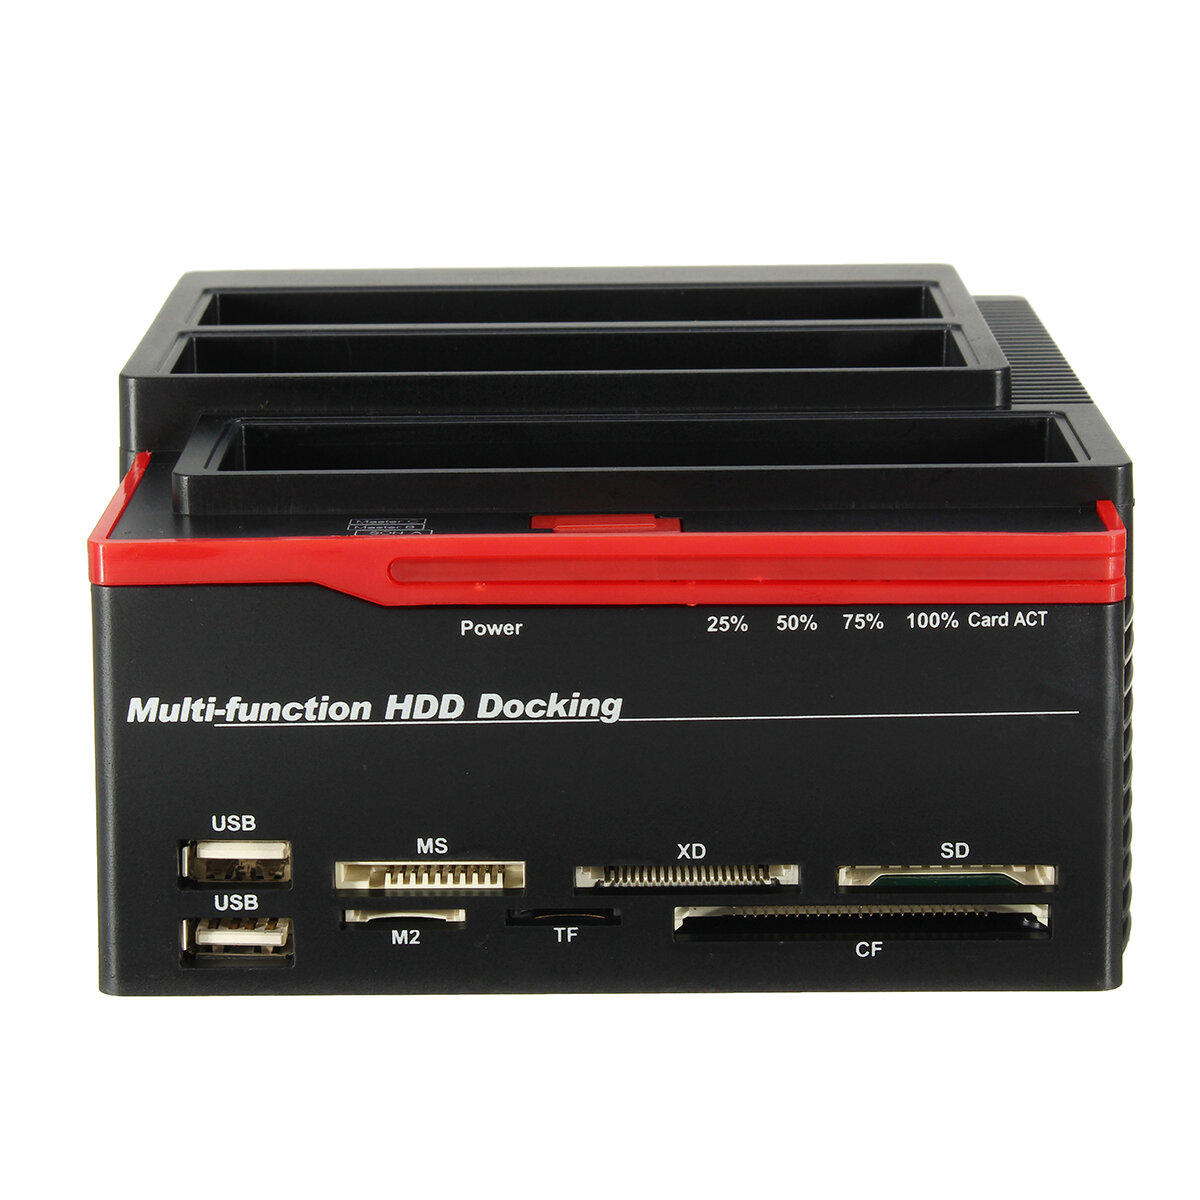 EU 2.5 “3.5” USB 3.0 To SATA IDE HDDSSDハードドライブドッキングステーションオフラインクローンカードリーダーハブ